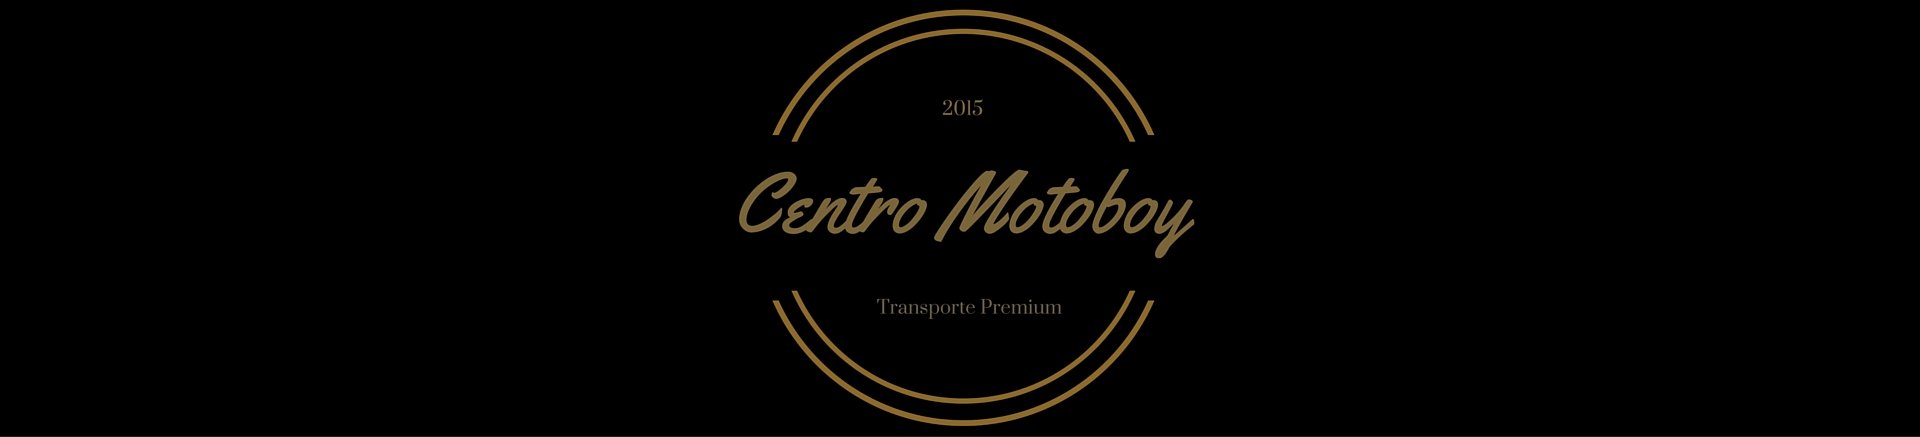 Centro express motoboy republica